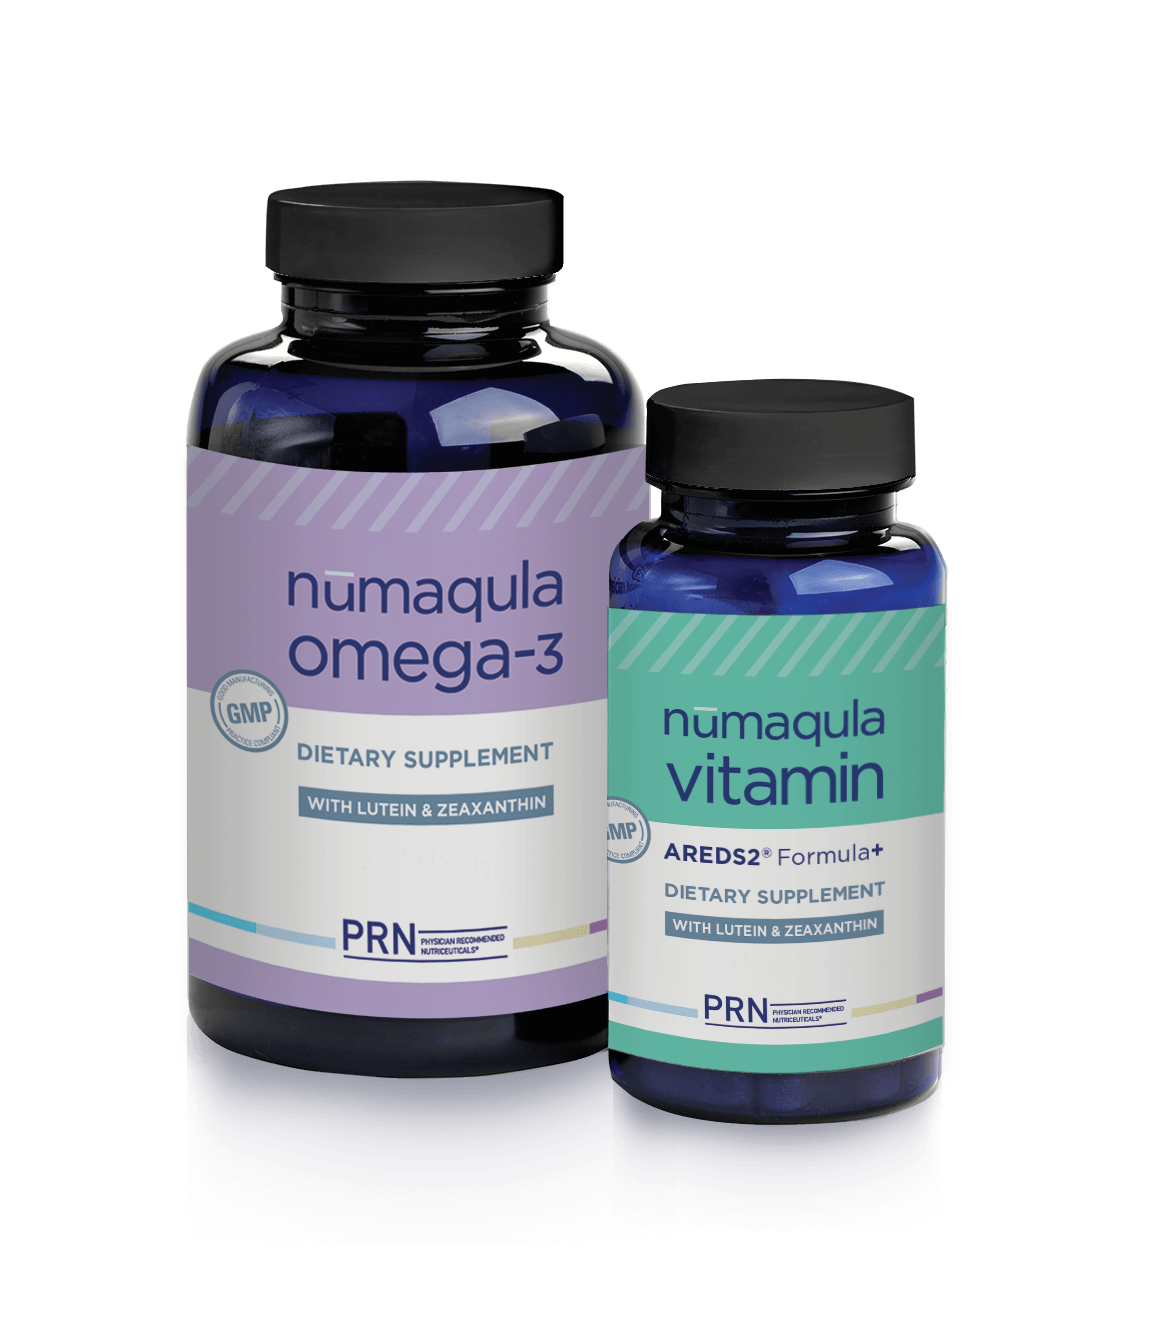 Numaqula Omega3 and Vitamin Supplements